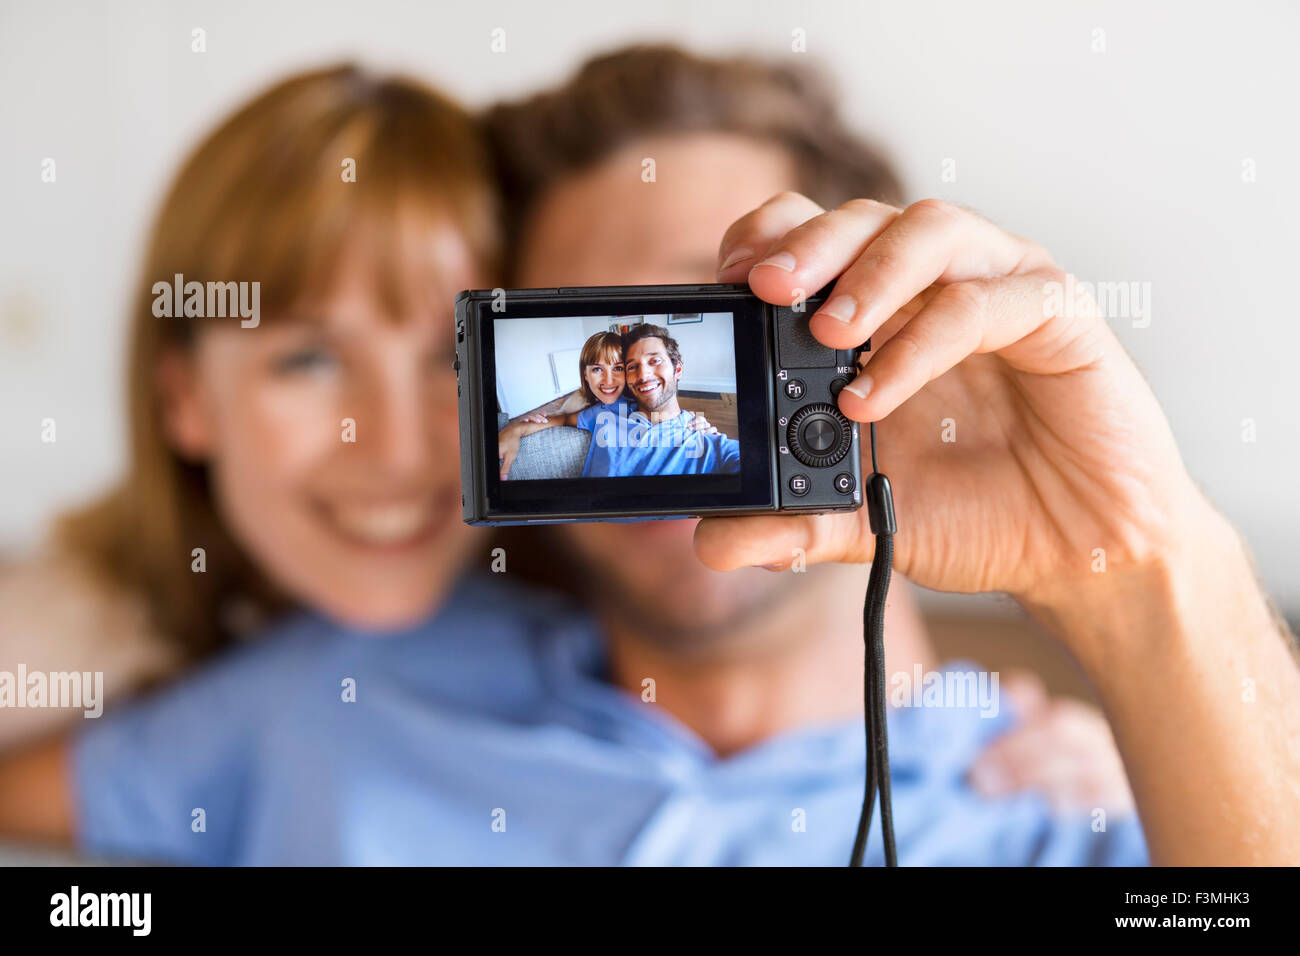 Allegro giovane prendendo un selfie con una telecamera. Casa bianca di sfondo Foto Stock